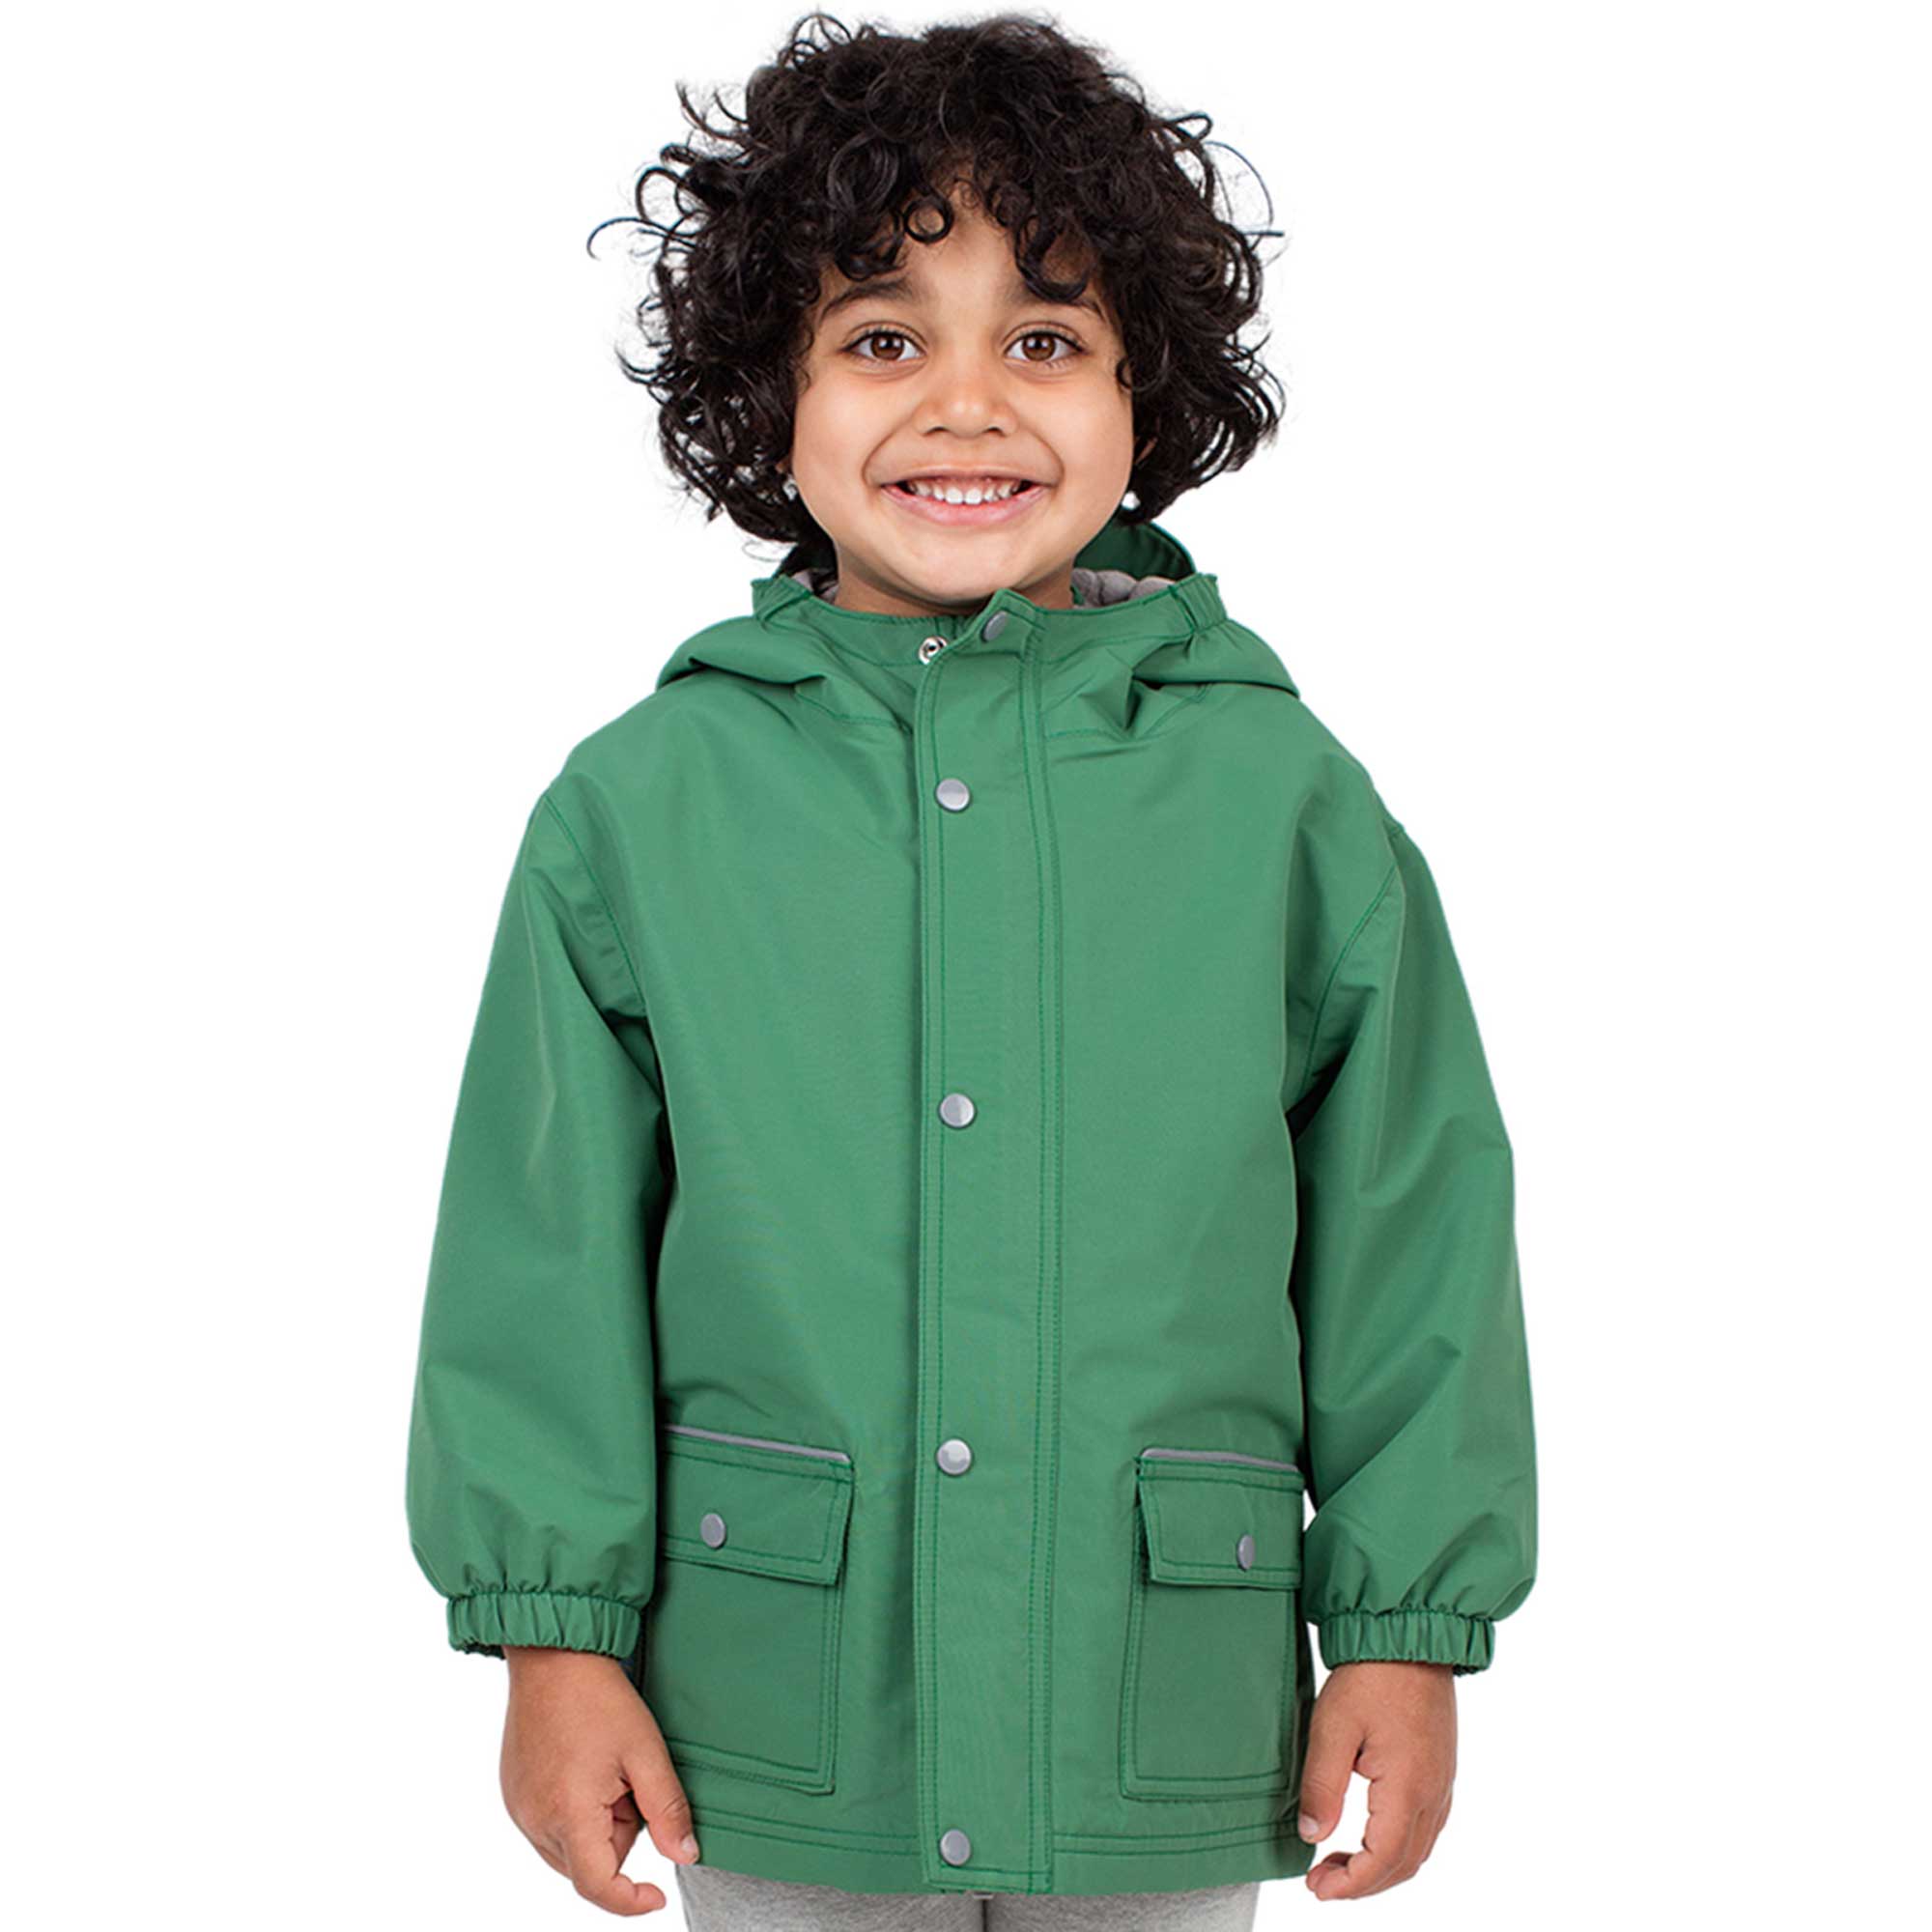 Kids Fleece Lined Rain Jackets | Fern Green Waterproof | Jan & Jul